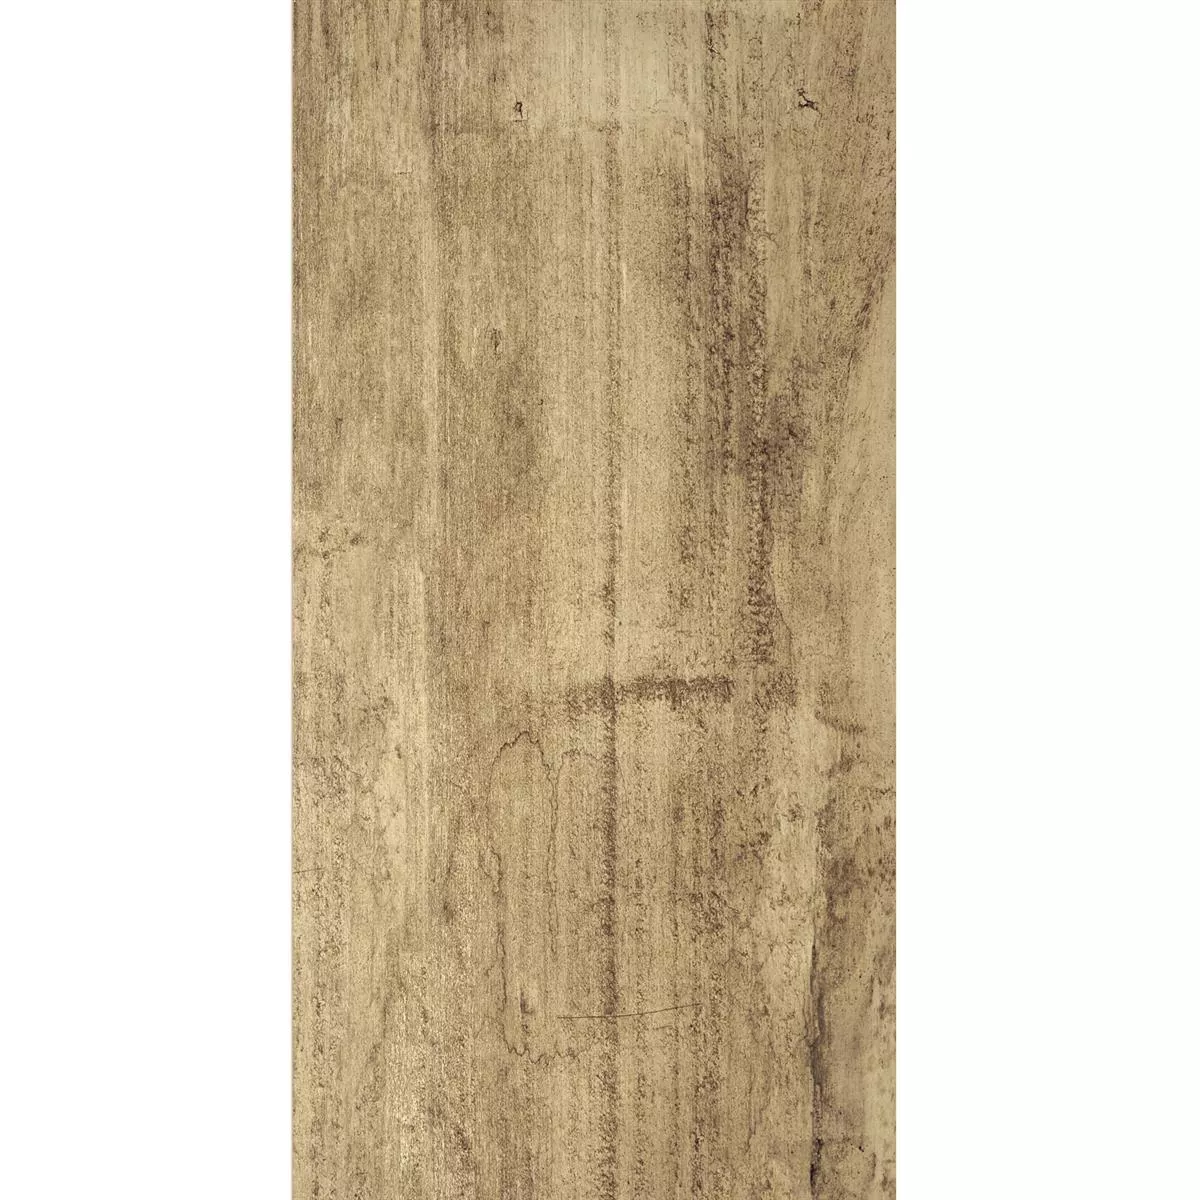 Próbka Wygląd Drewna Płytki Podłogowe Colonia Brzozowy 45x90cm